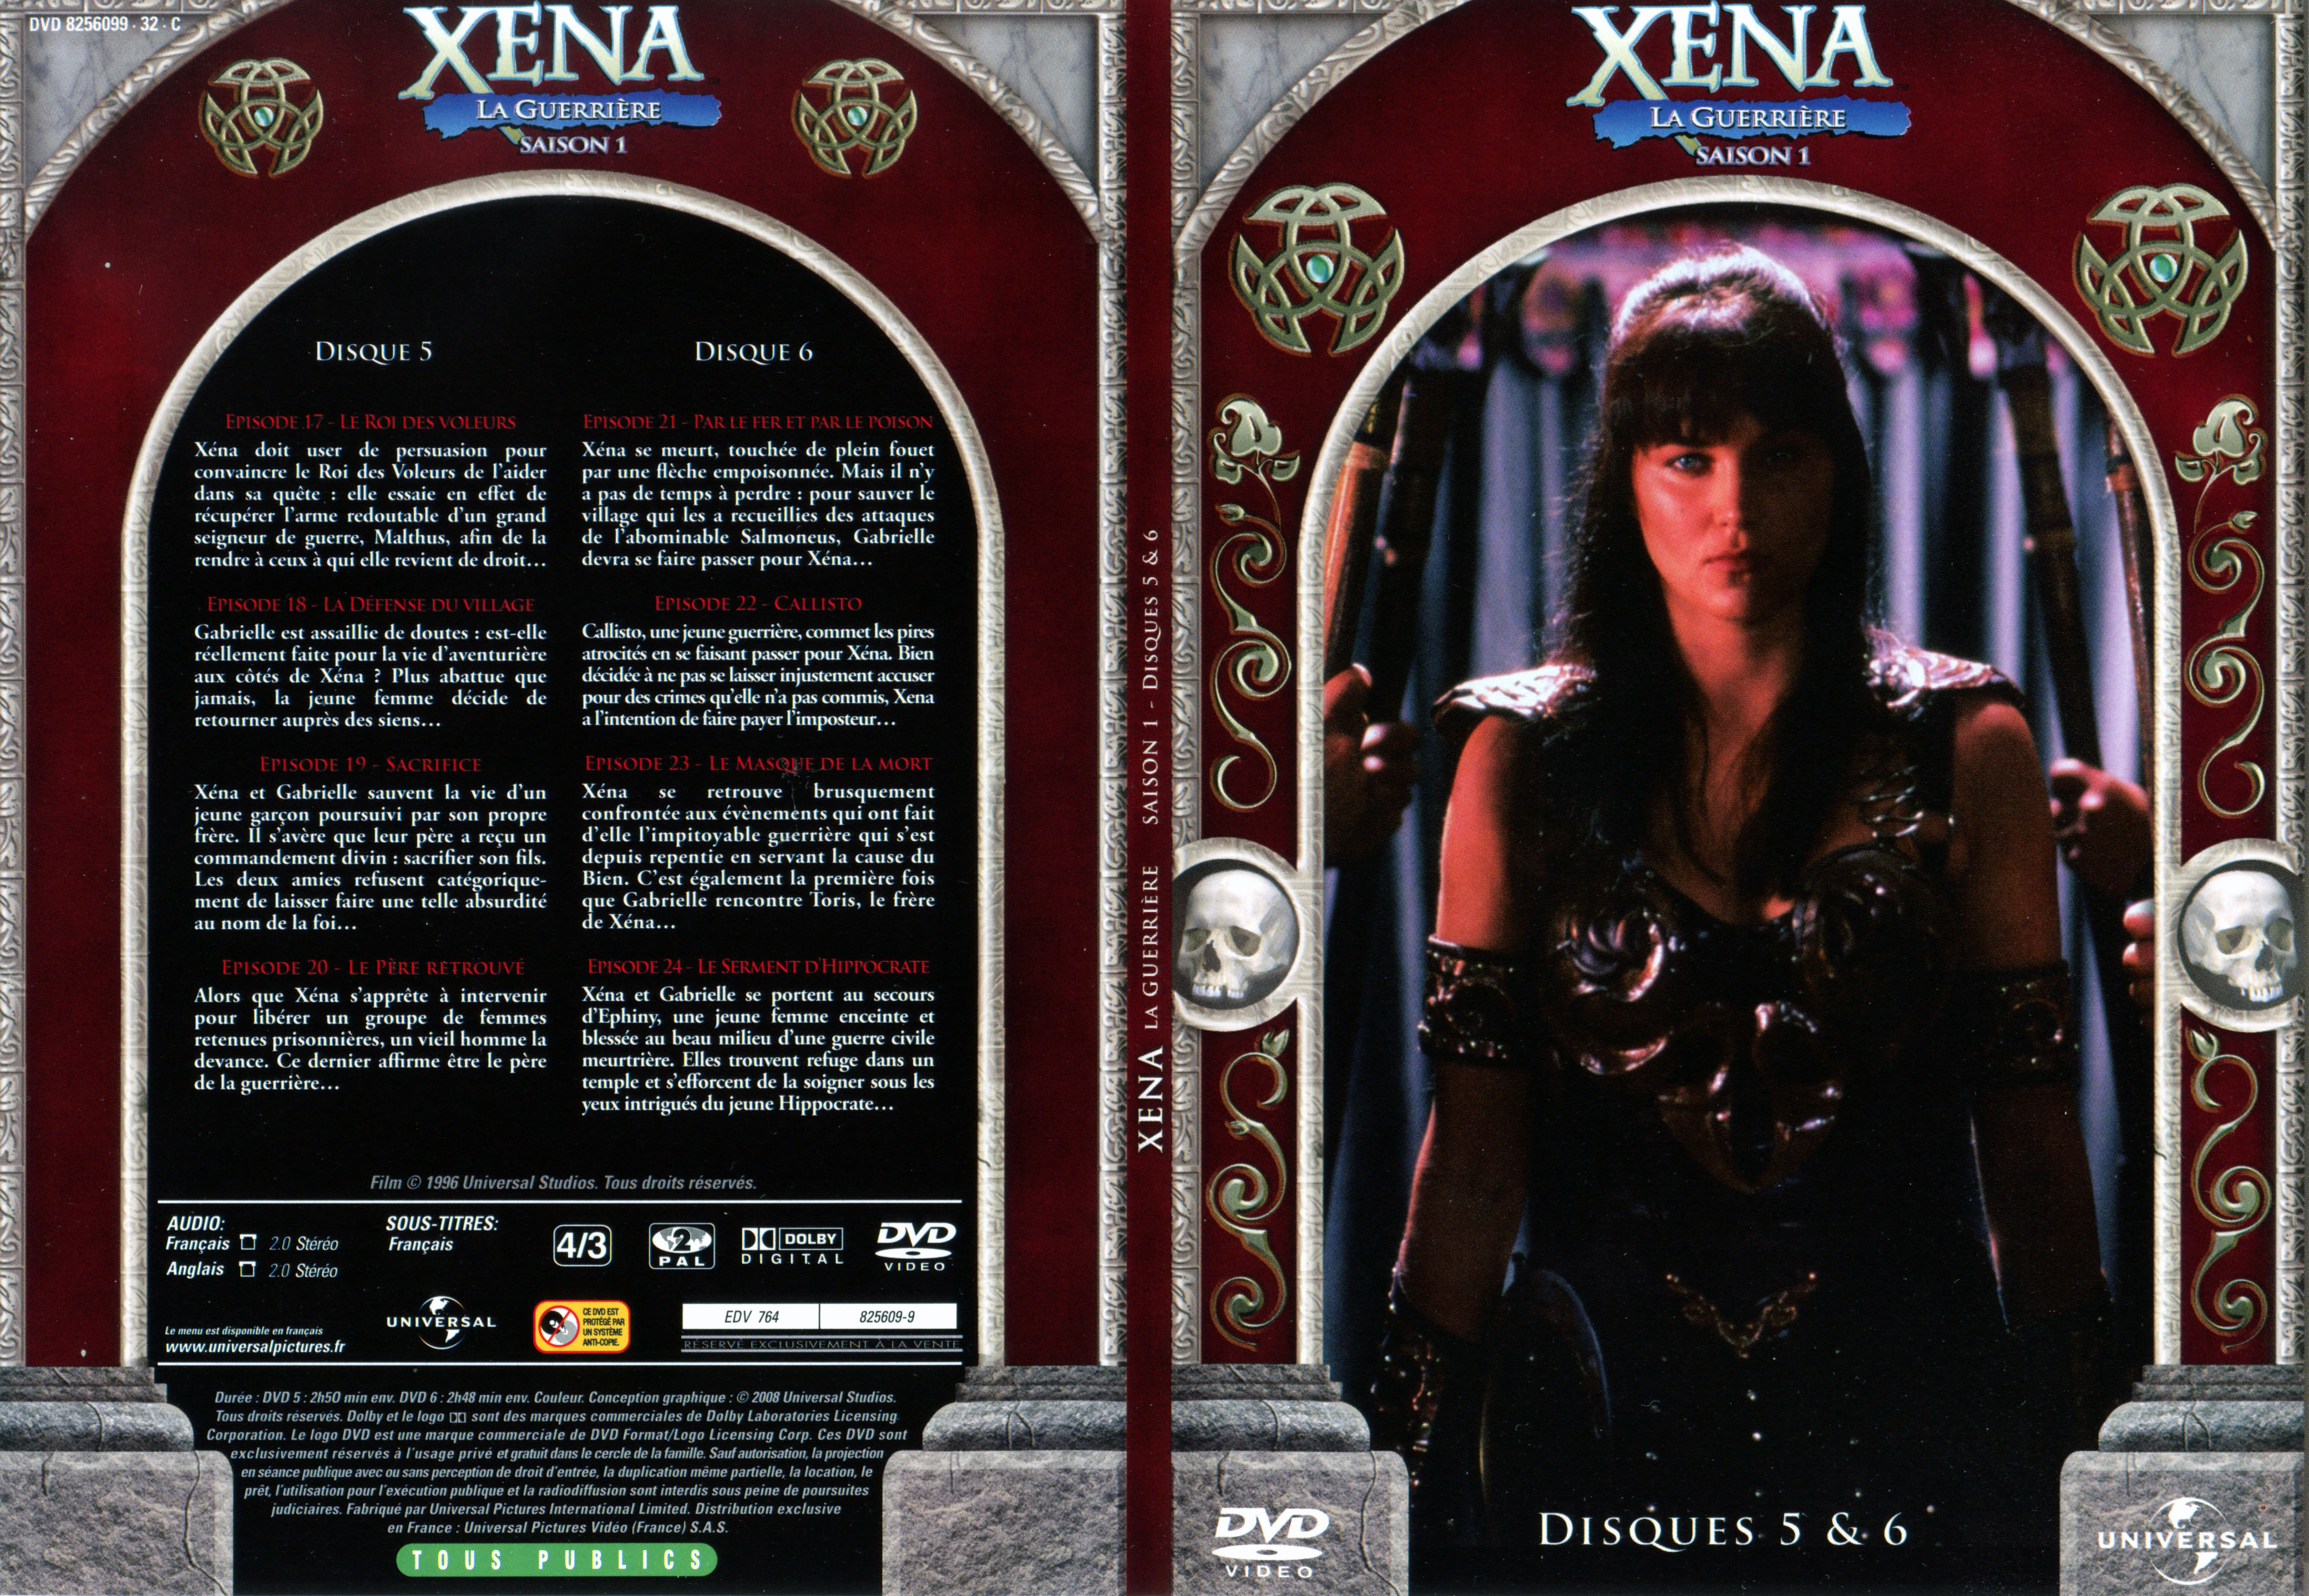 Jaquette DVD Xéna la guerrière Saison 1 DVD 3